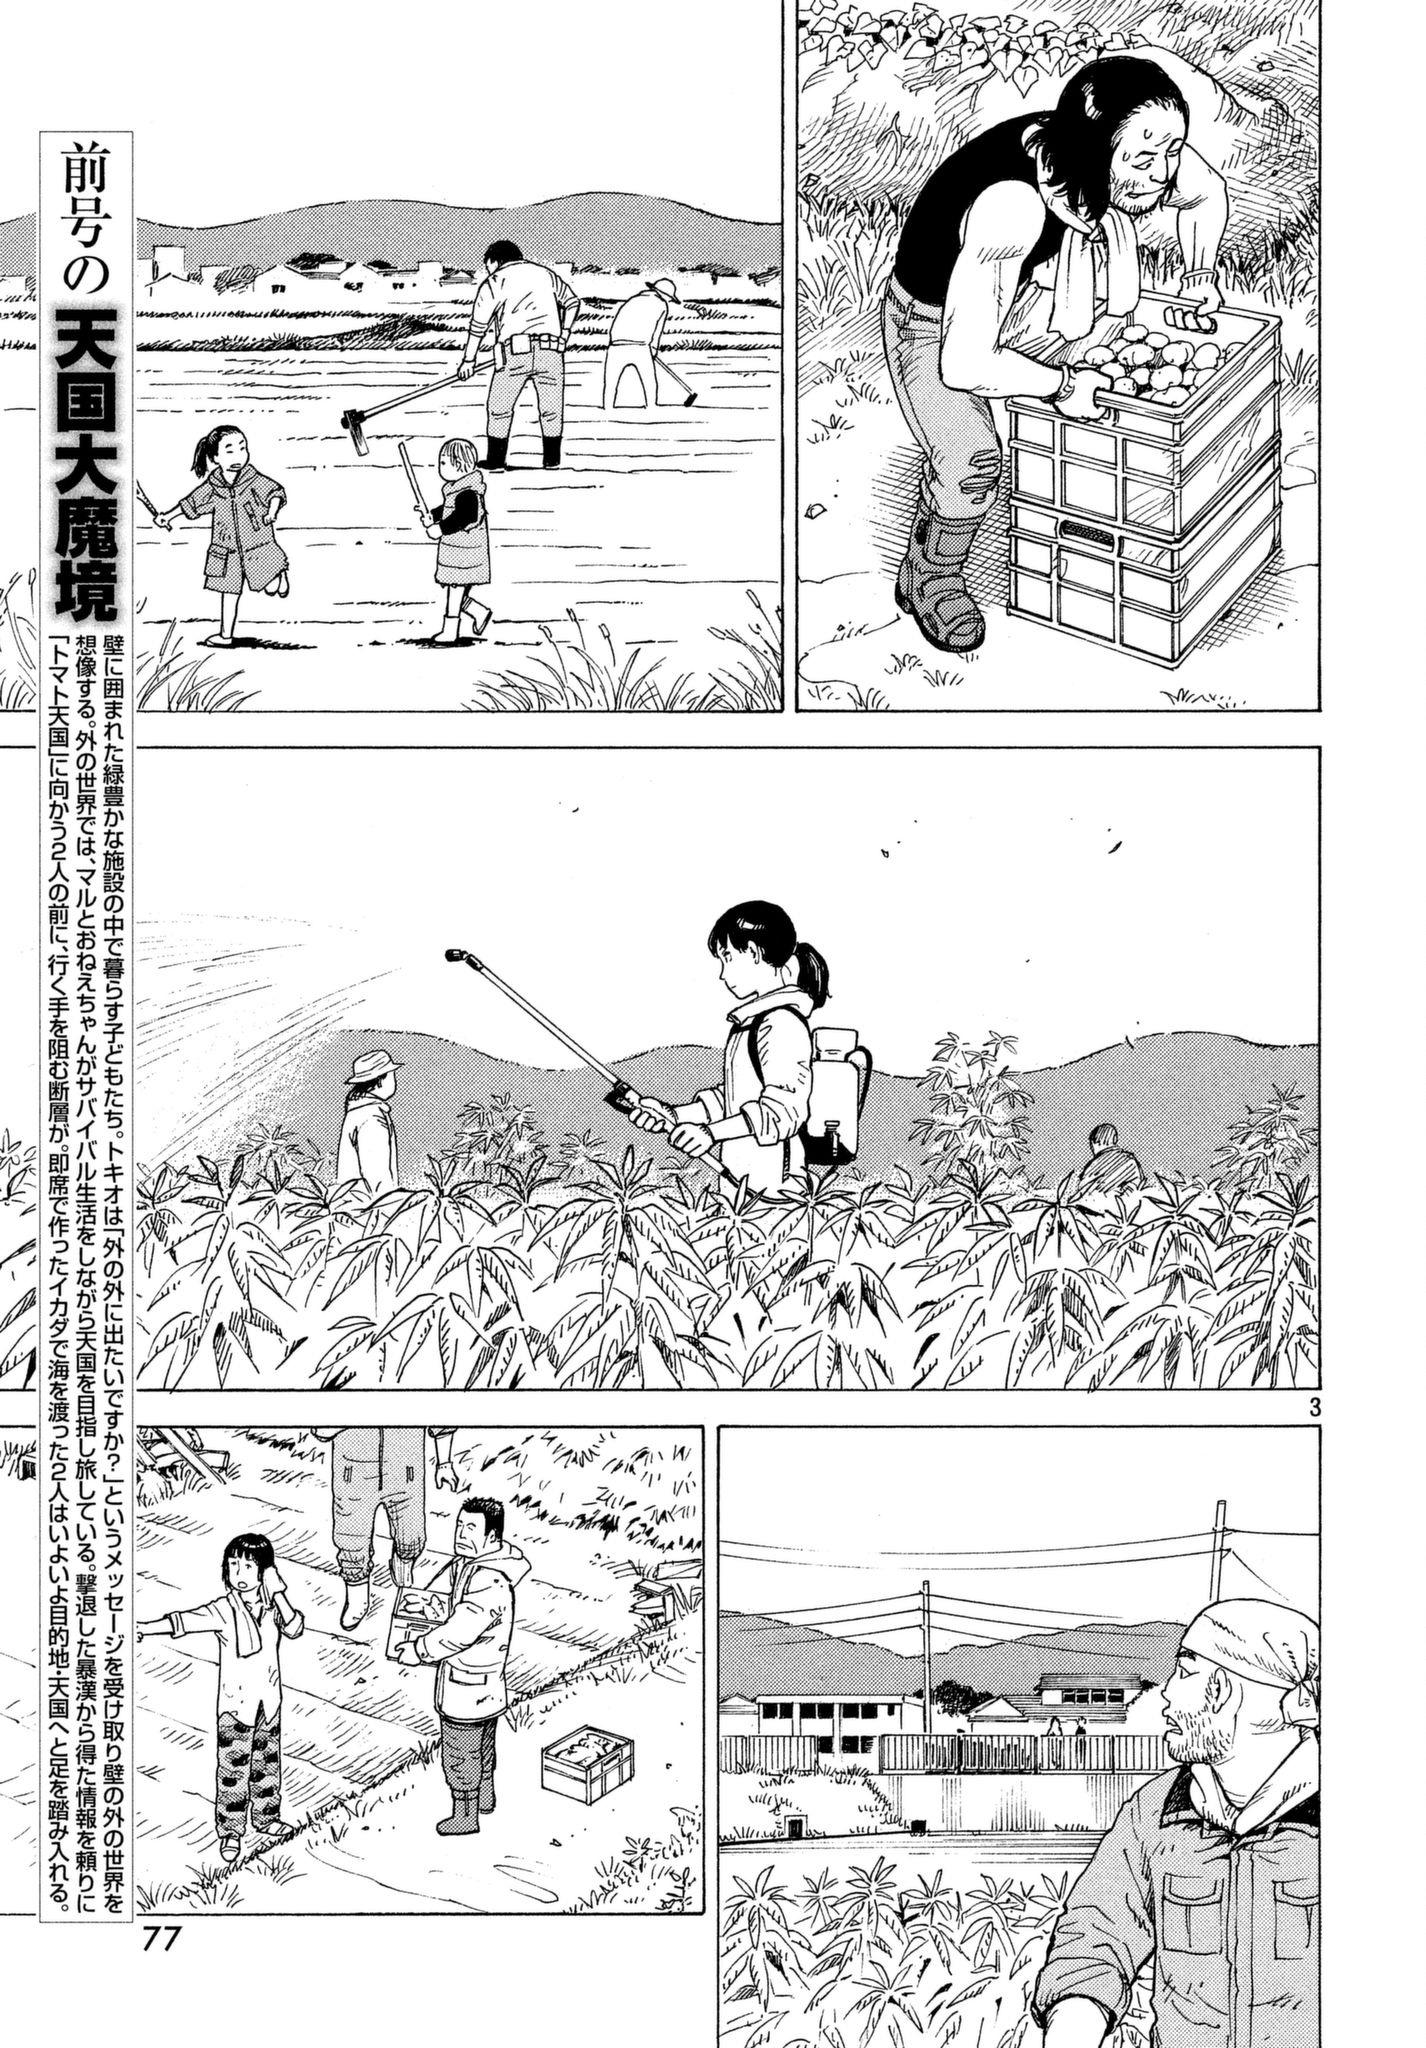 Tengoku Daimakyou Vol.1 Chapter 7: Tomato Heaven page 3 - Mangakakalot